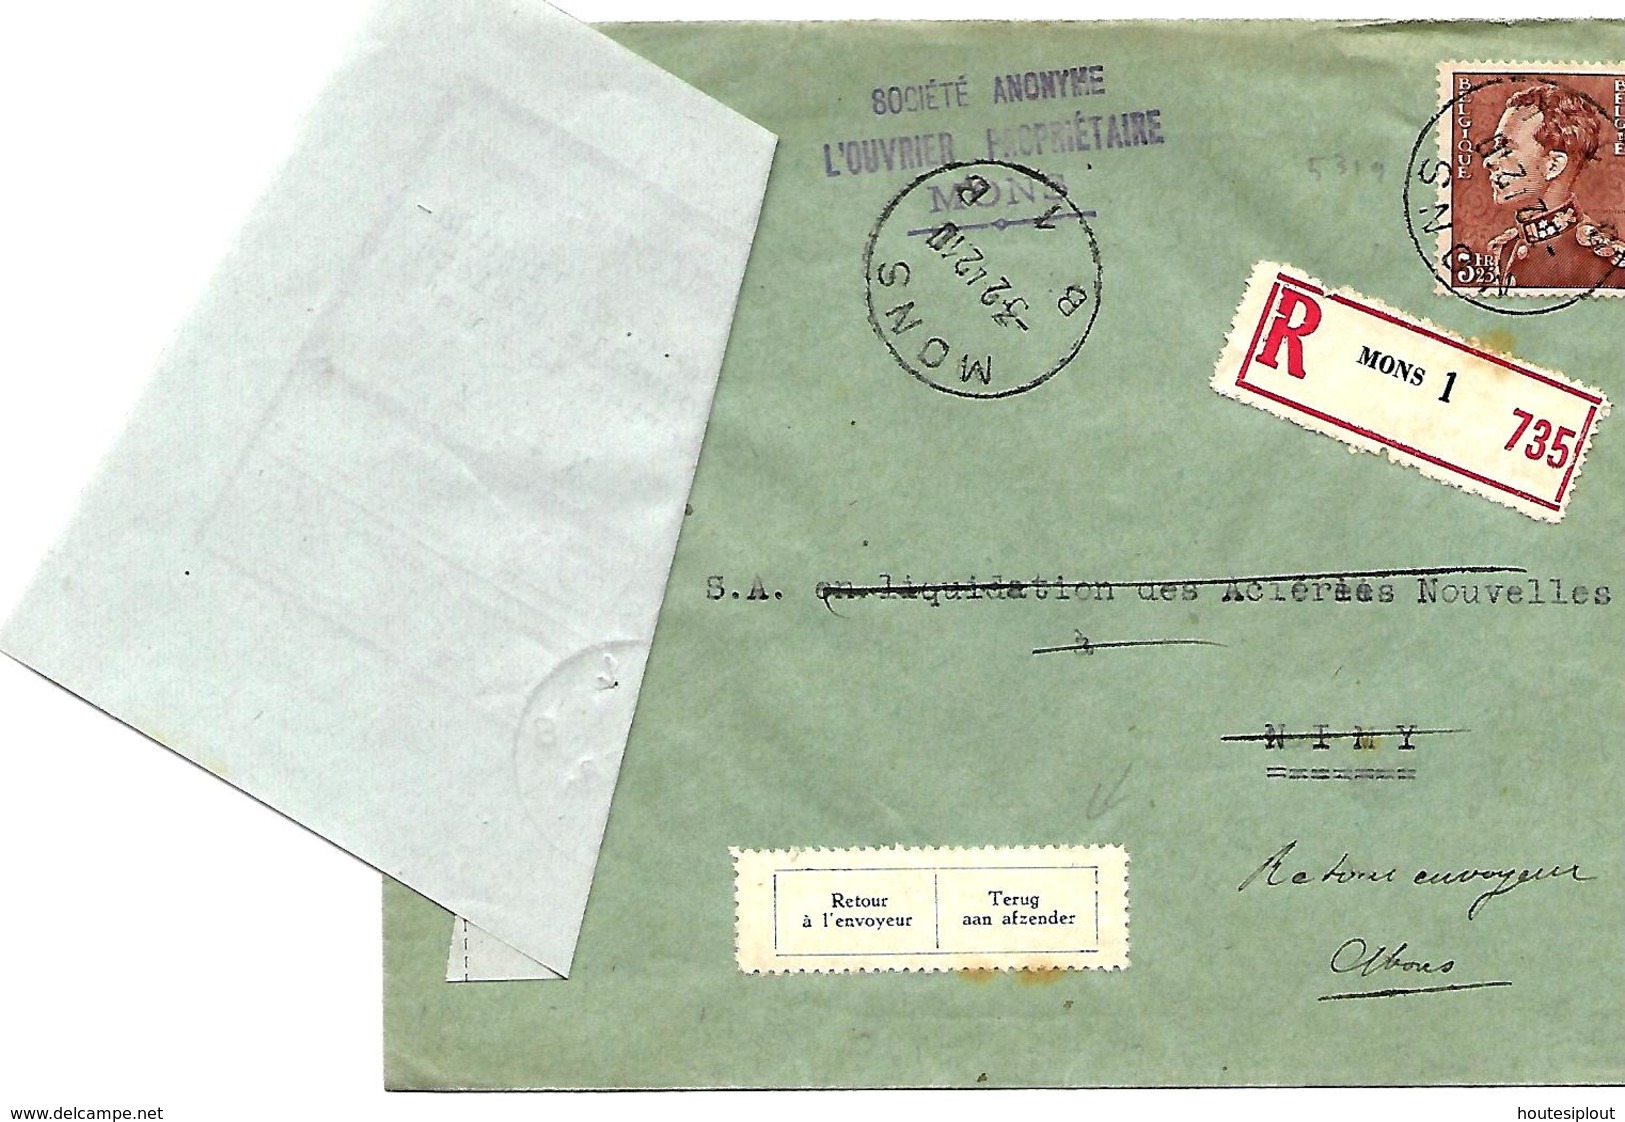 Belgique TP 531 L. Rec. Mons 1 > Nimy   Adresse Insuffisante + Le Récéipissé   1942 - Lettres & Documents